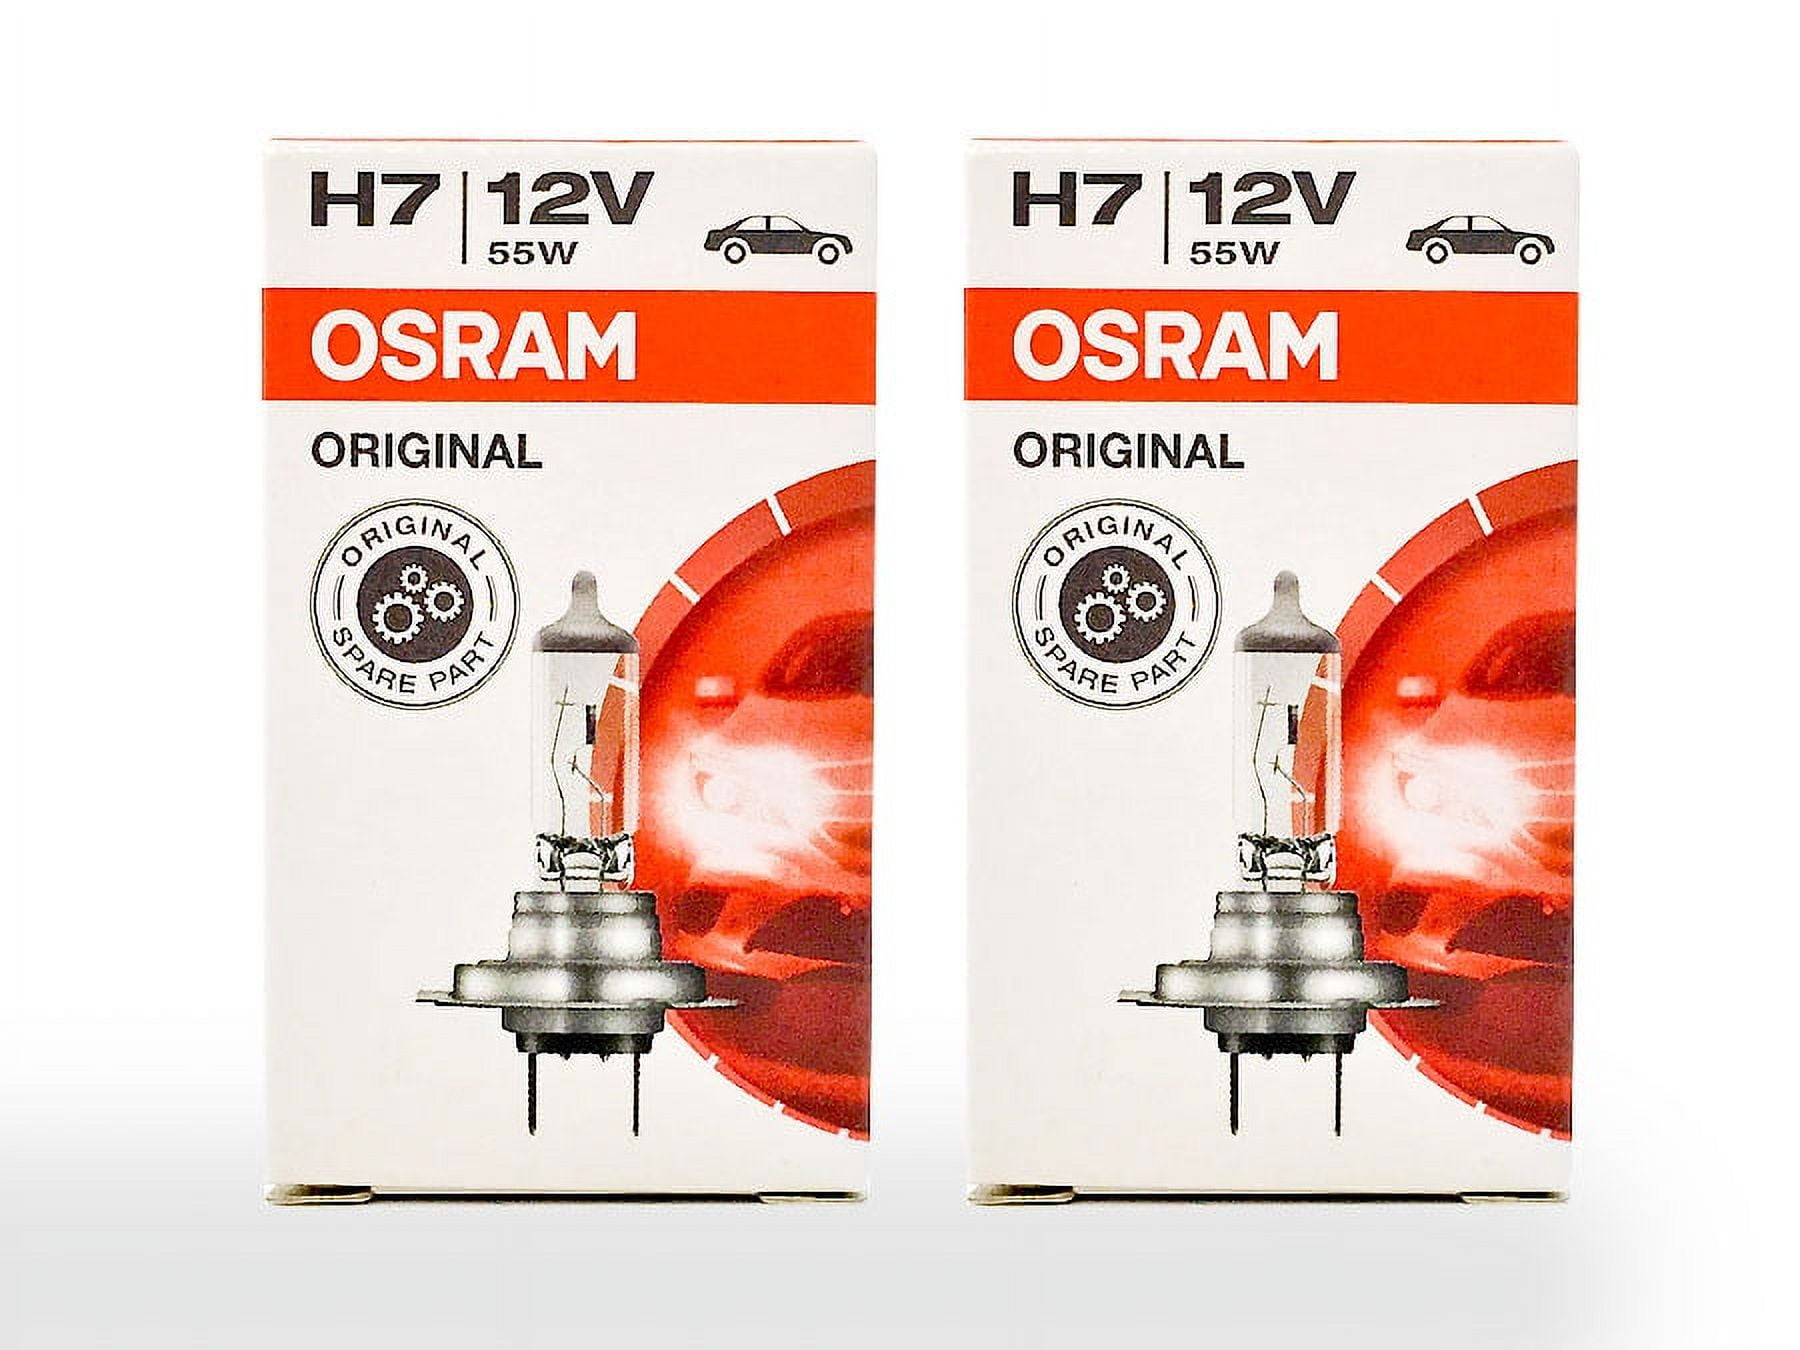 OSRAM H7 12V 55W PX26d 3200K 64210 Original Line Bulb Standard